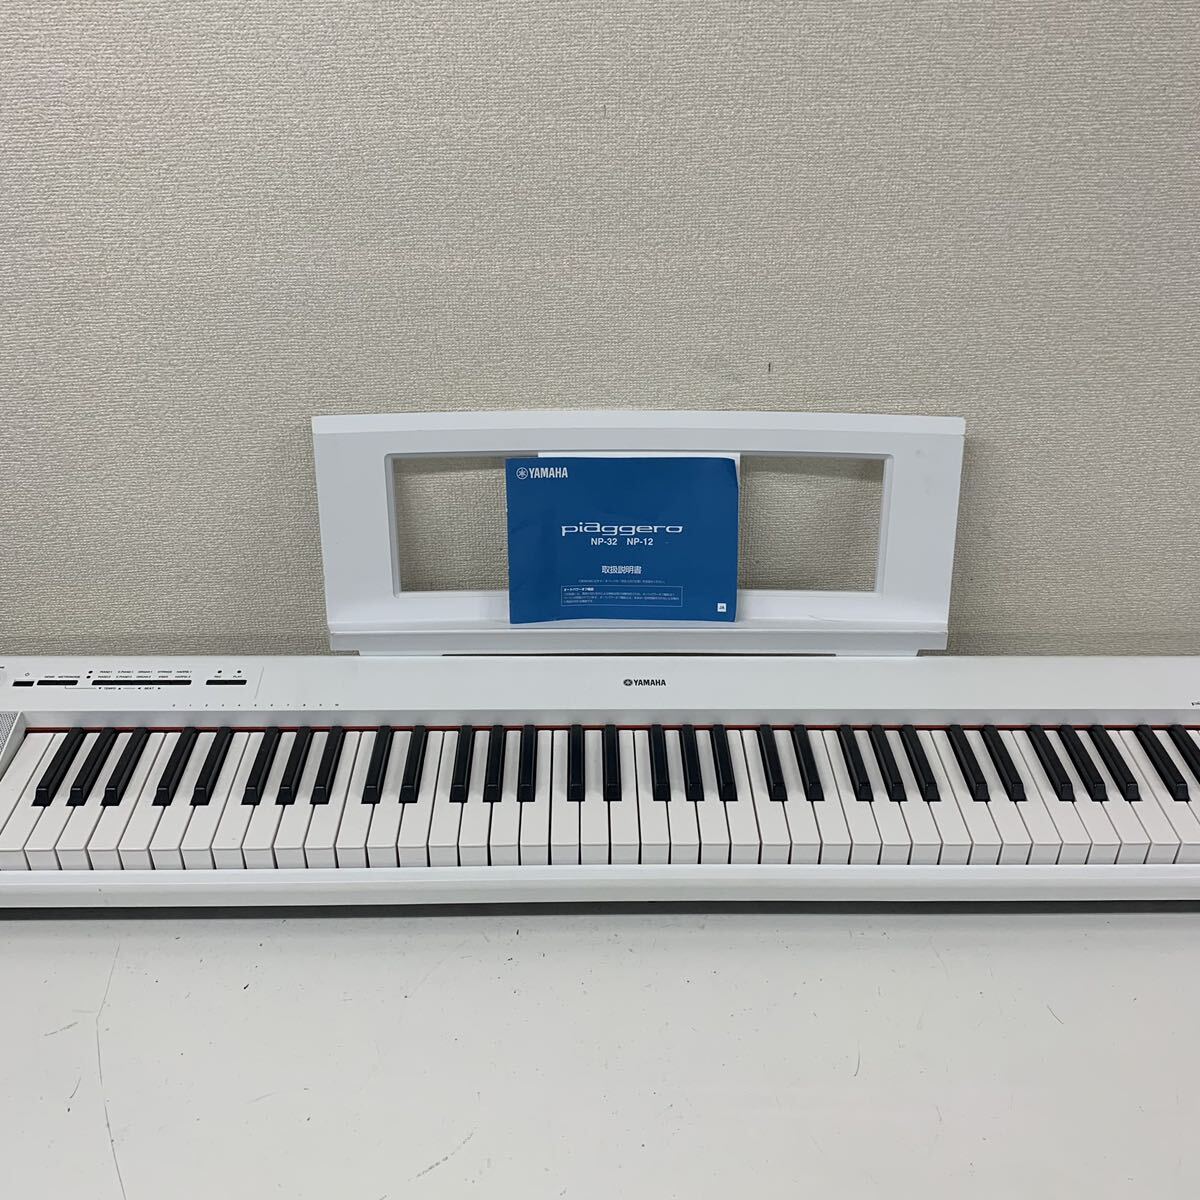 【Gt3】 YAMAHA NP-32 キーボード 電子ピアノ 現状品 譜面台 配送可能 鍵盤 電子キーボード piaggero ピアジェーロ ホワイト 1491-33_画像1